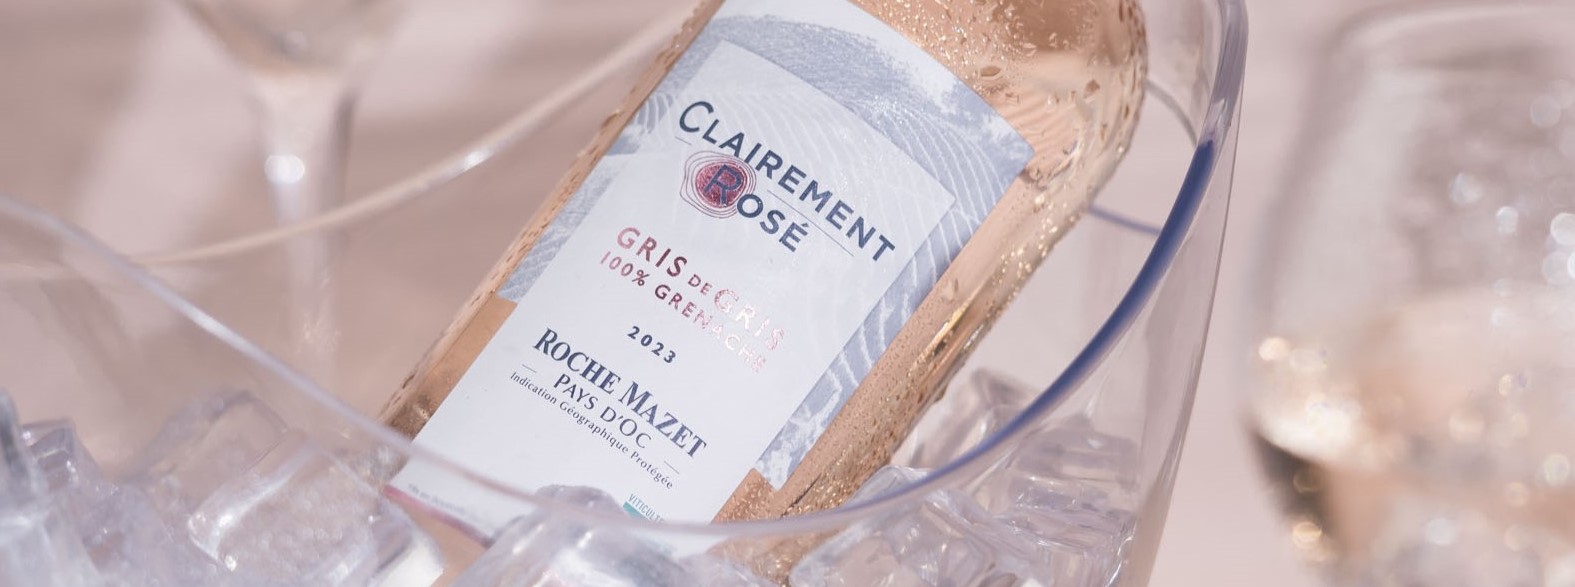 Dégustation de vin Clairement Rosé de Roche Mazet avec verres et bouteille dans un seau à glace